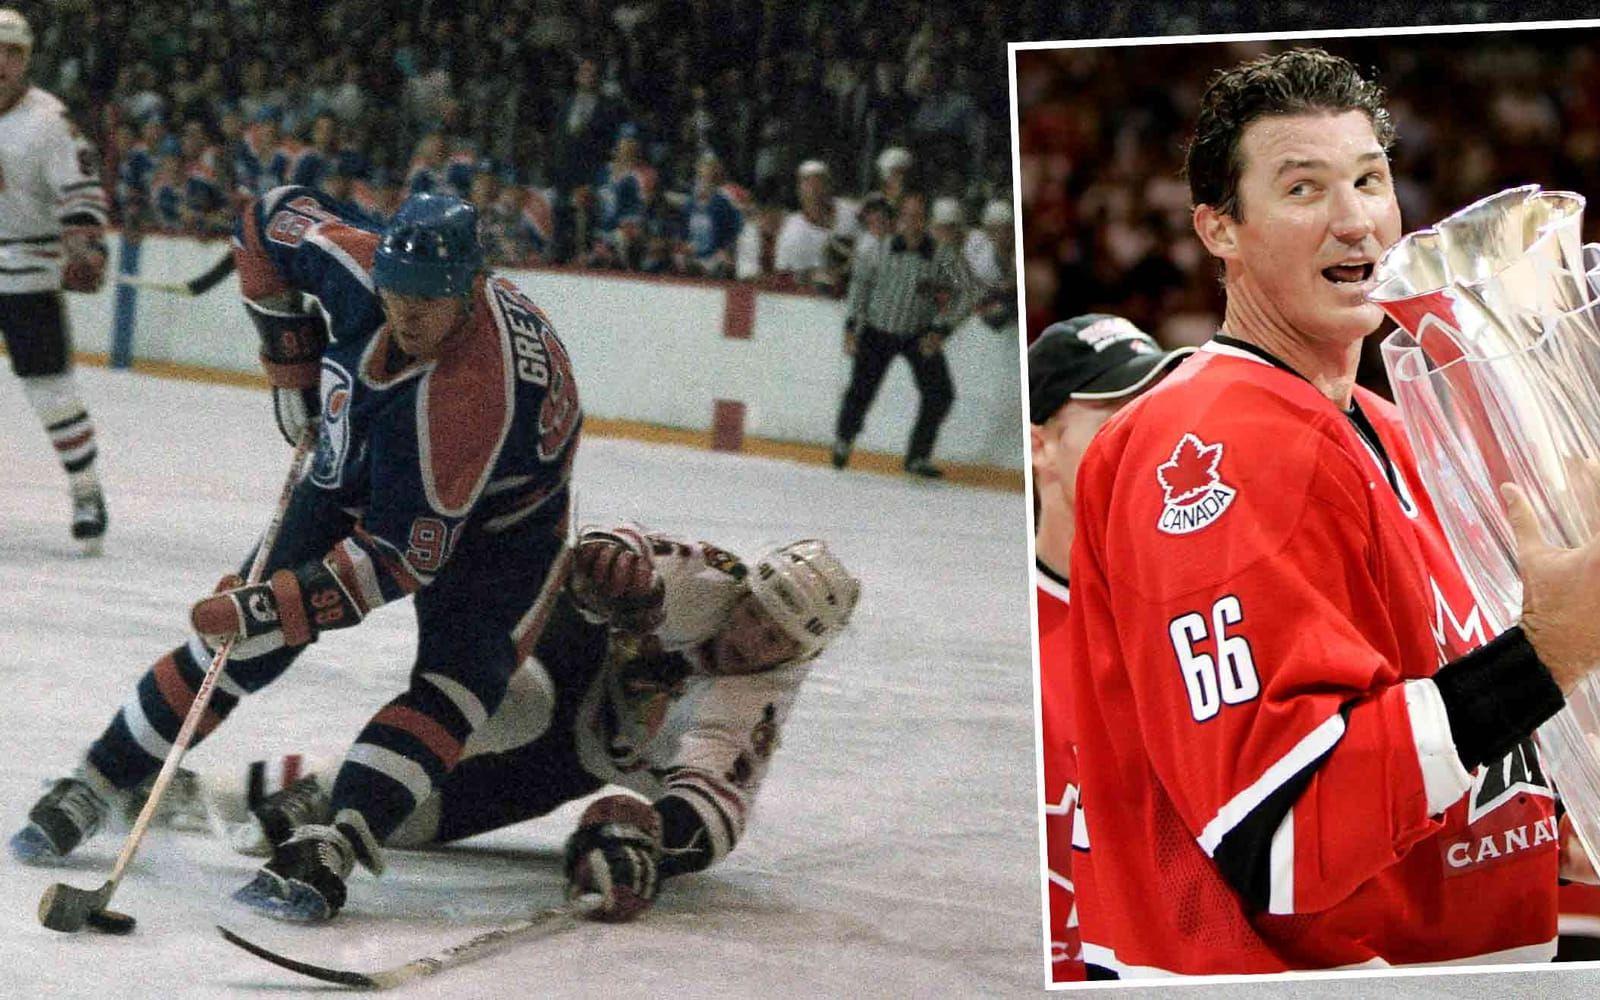 <strong>Wayne Gretzky vs. Mario Lemieux.</strong> "Super-Mario" var den enda som kunde utmana "The Great One" om titeln världens bästa ishockeyspelare – under en period av Gretzkys tid i NHL . Foto: TT